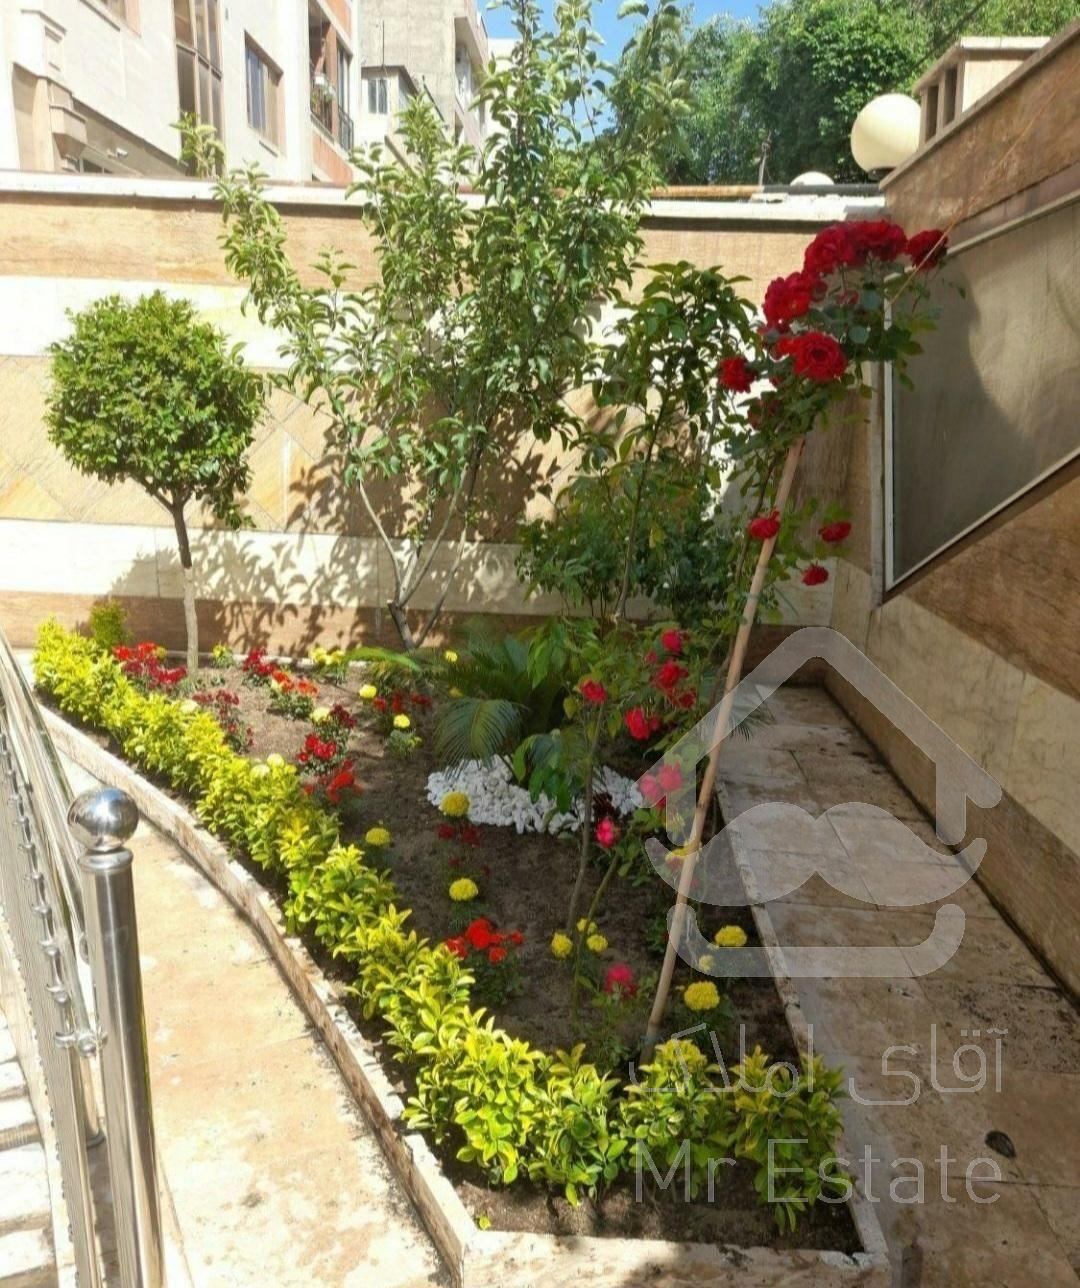 باغبانی گلکاری هرسکاری سمپاشی سراسر تهران